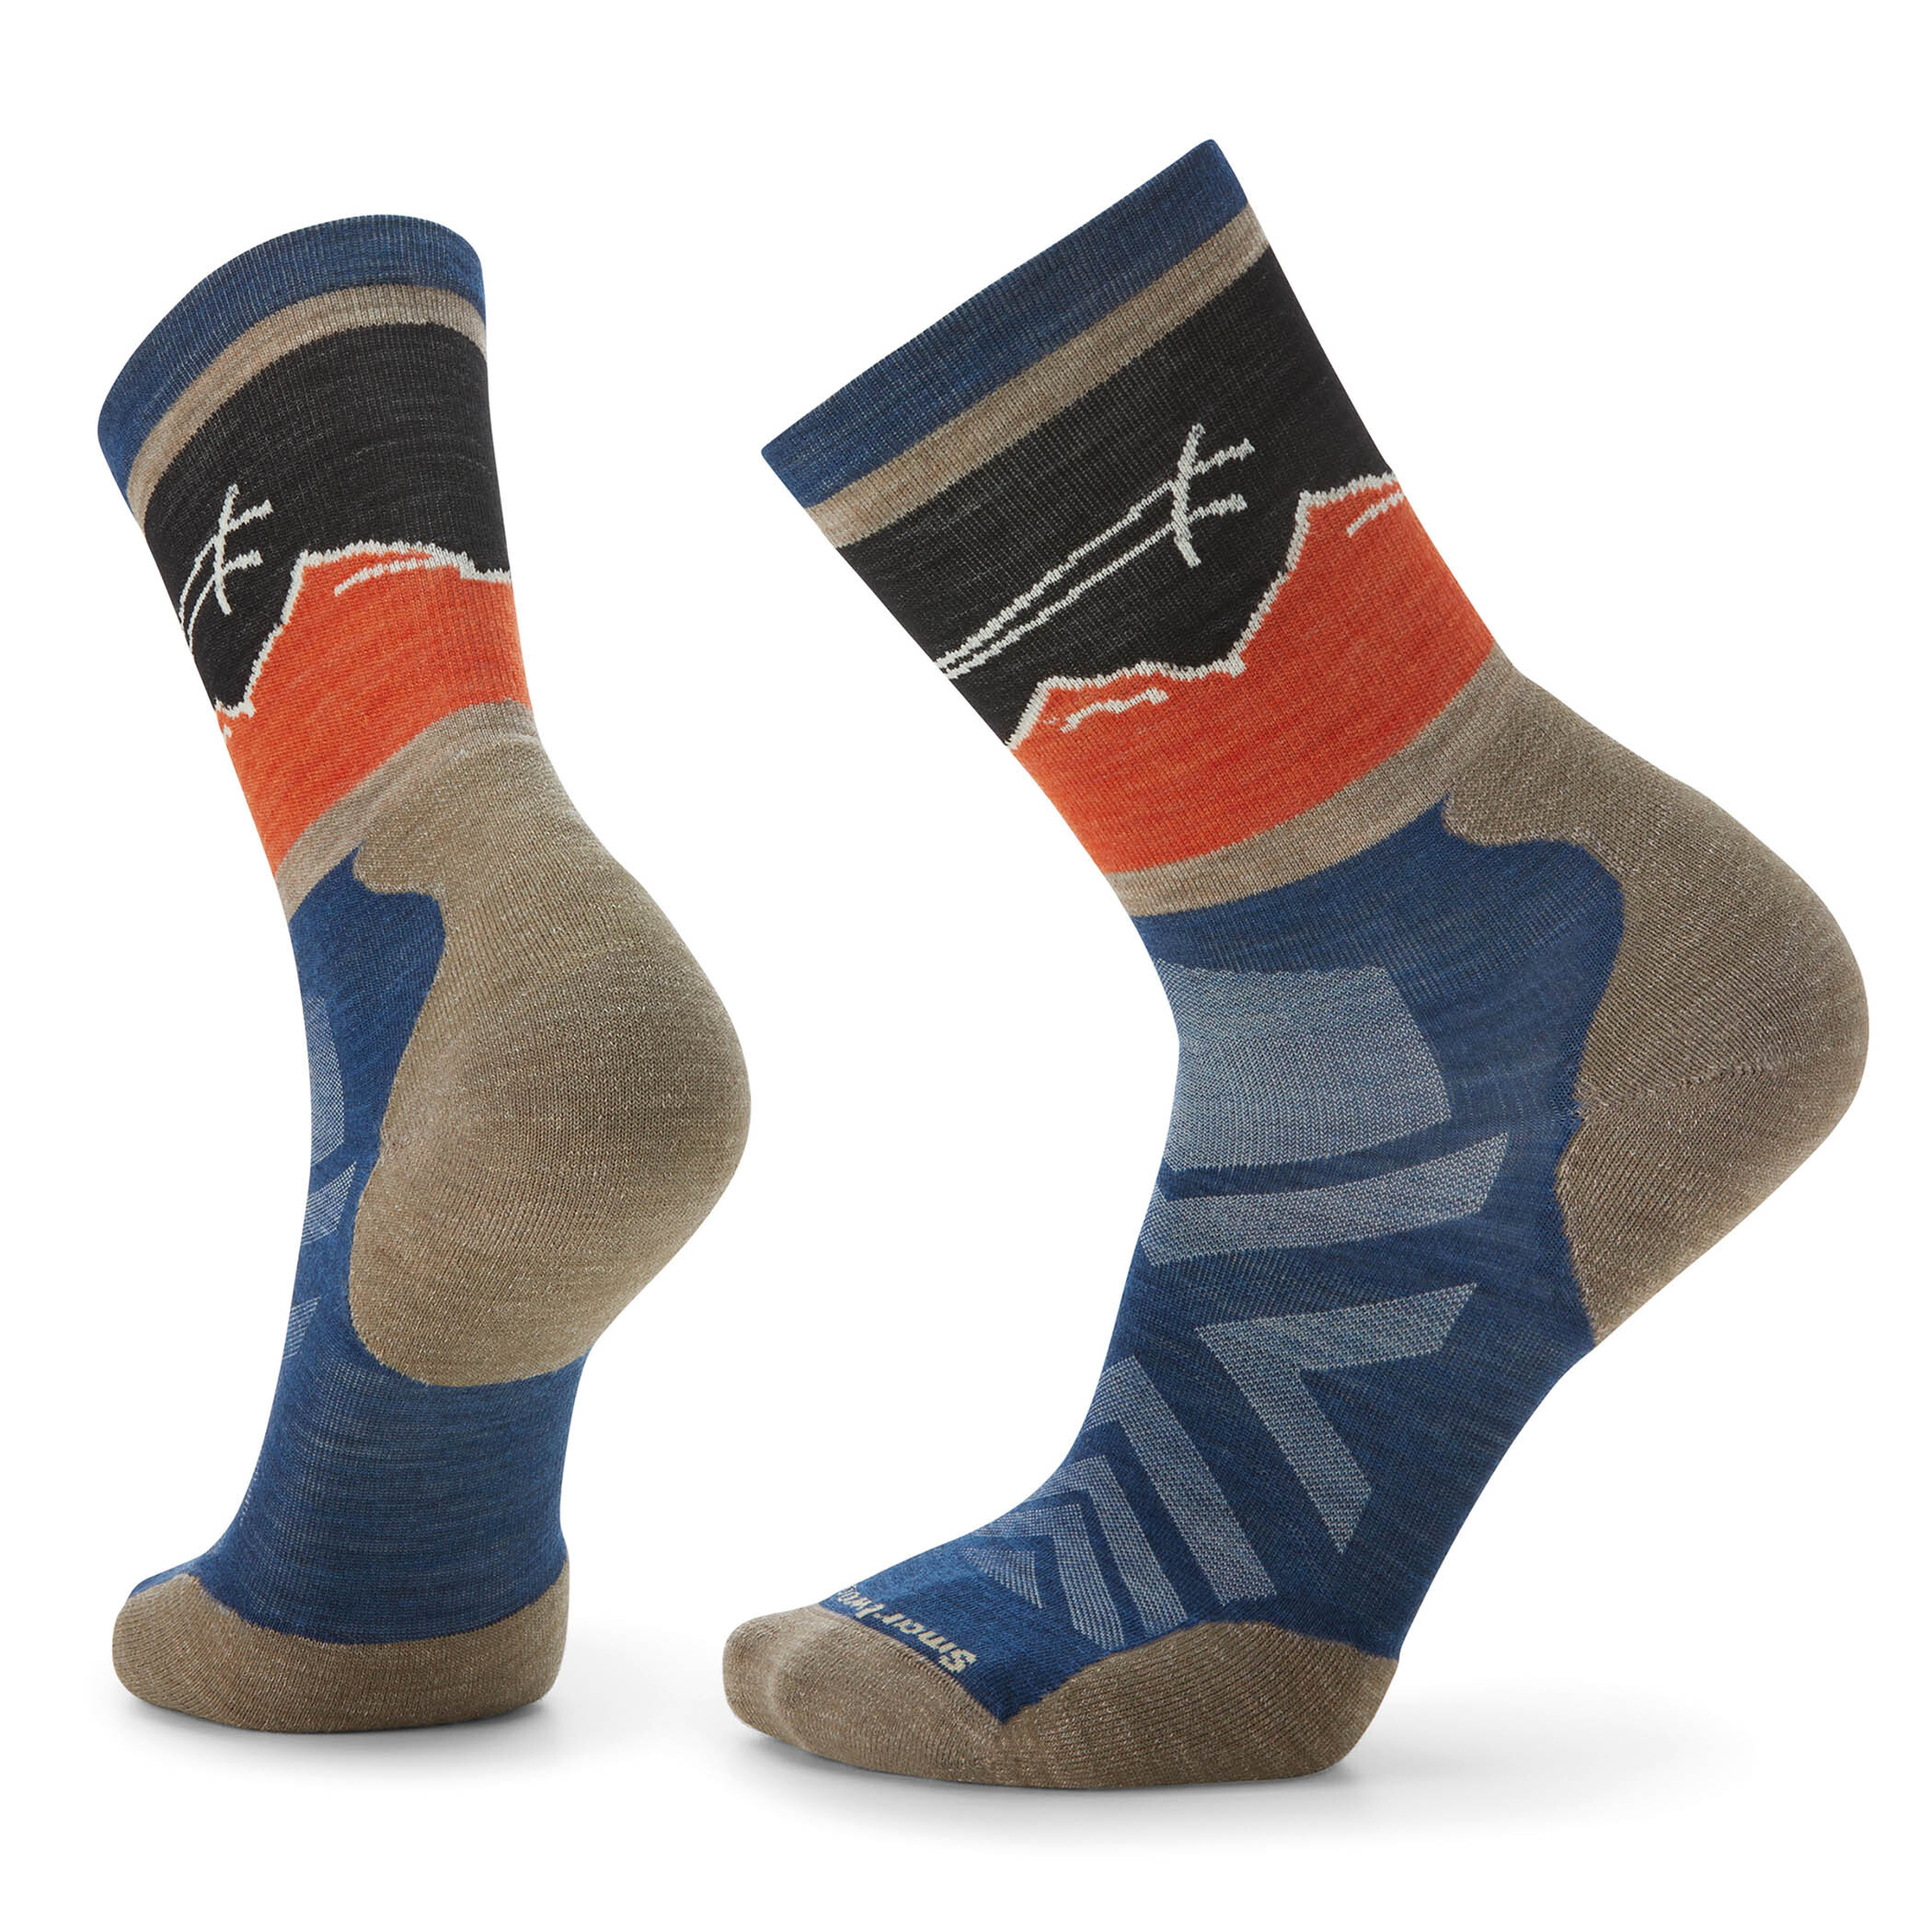 Sie können zum niedrigsten Preis kaufen! Athlete Edition Crew Socken | Smartwool Blau col. Anlauf für